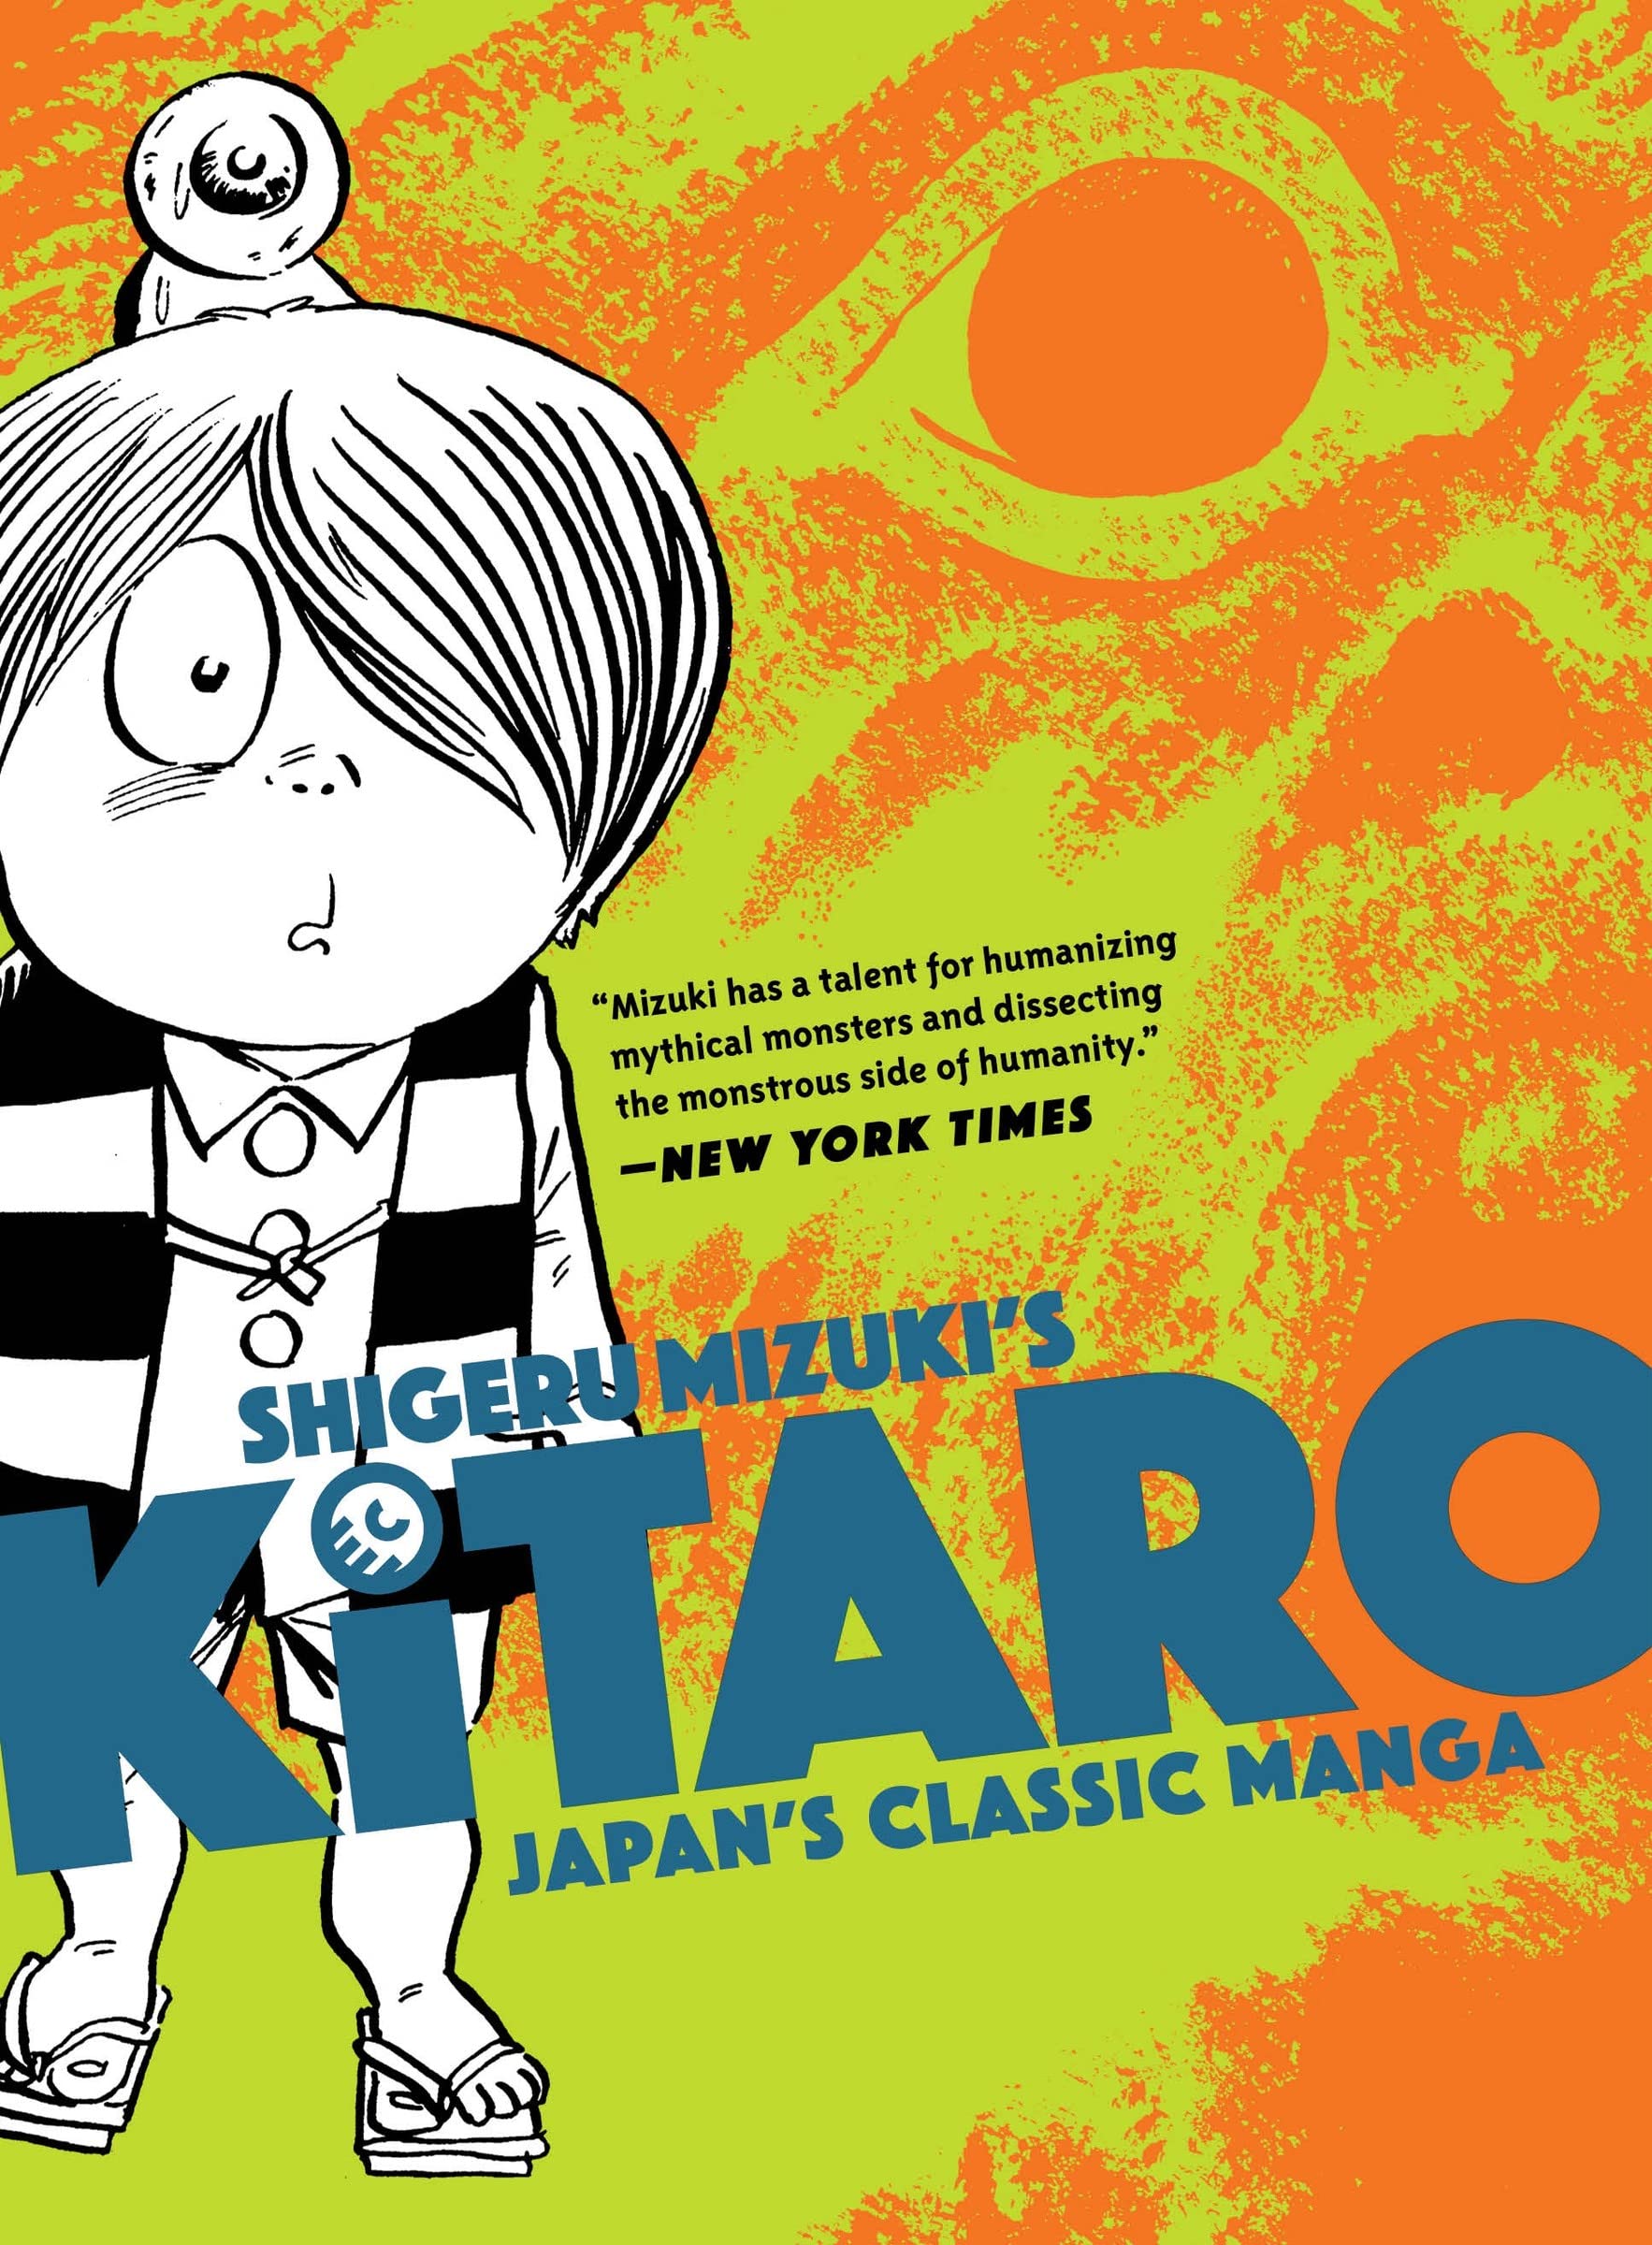 Kitaro Manga Mixes Horror, Weirdness and Humor